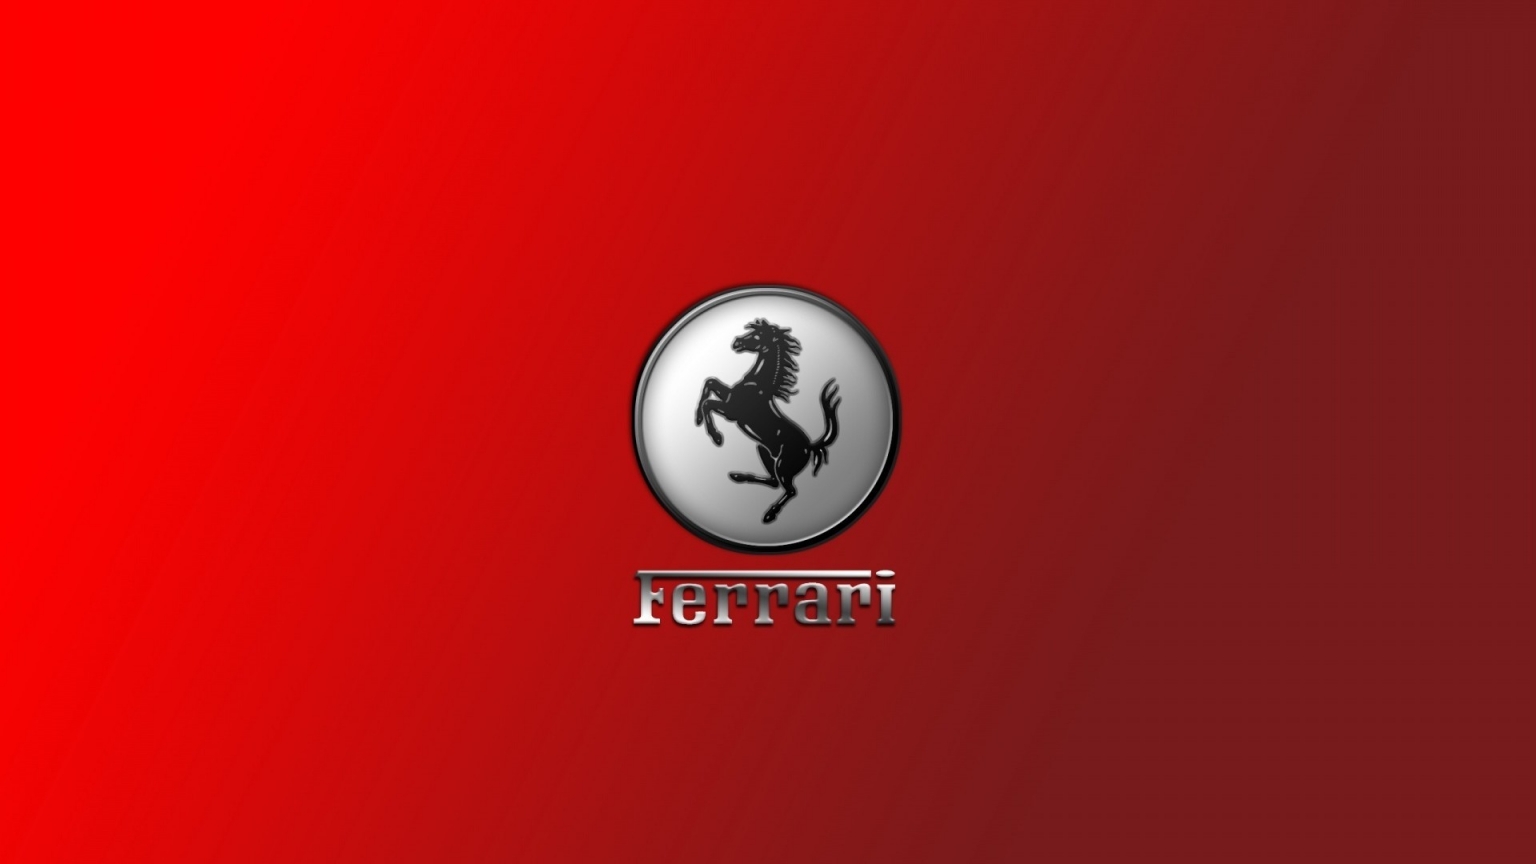 Gorgeous Ferrari Logo for 1536 x 864 HDTV resolution